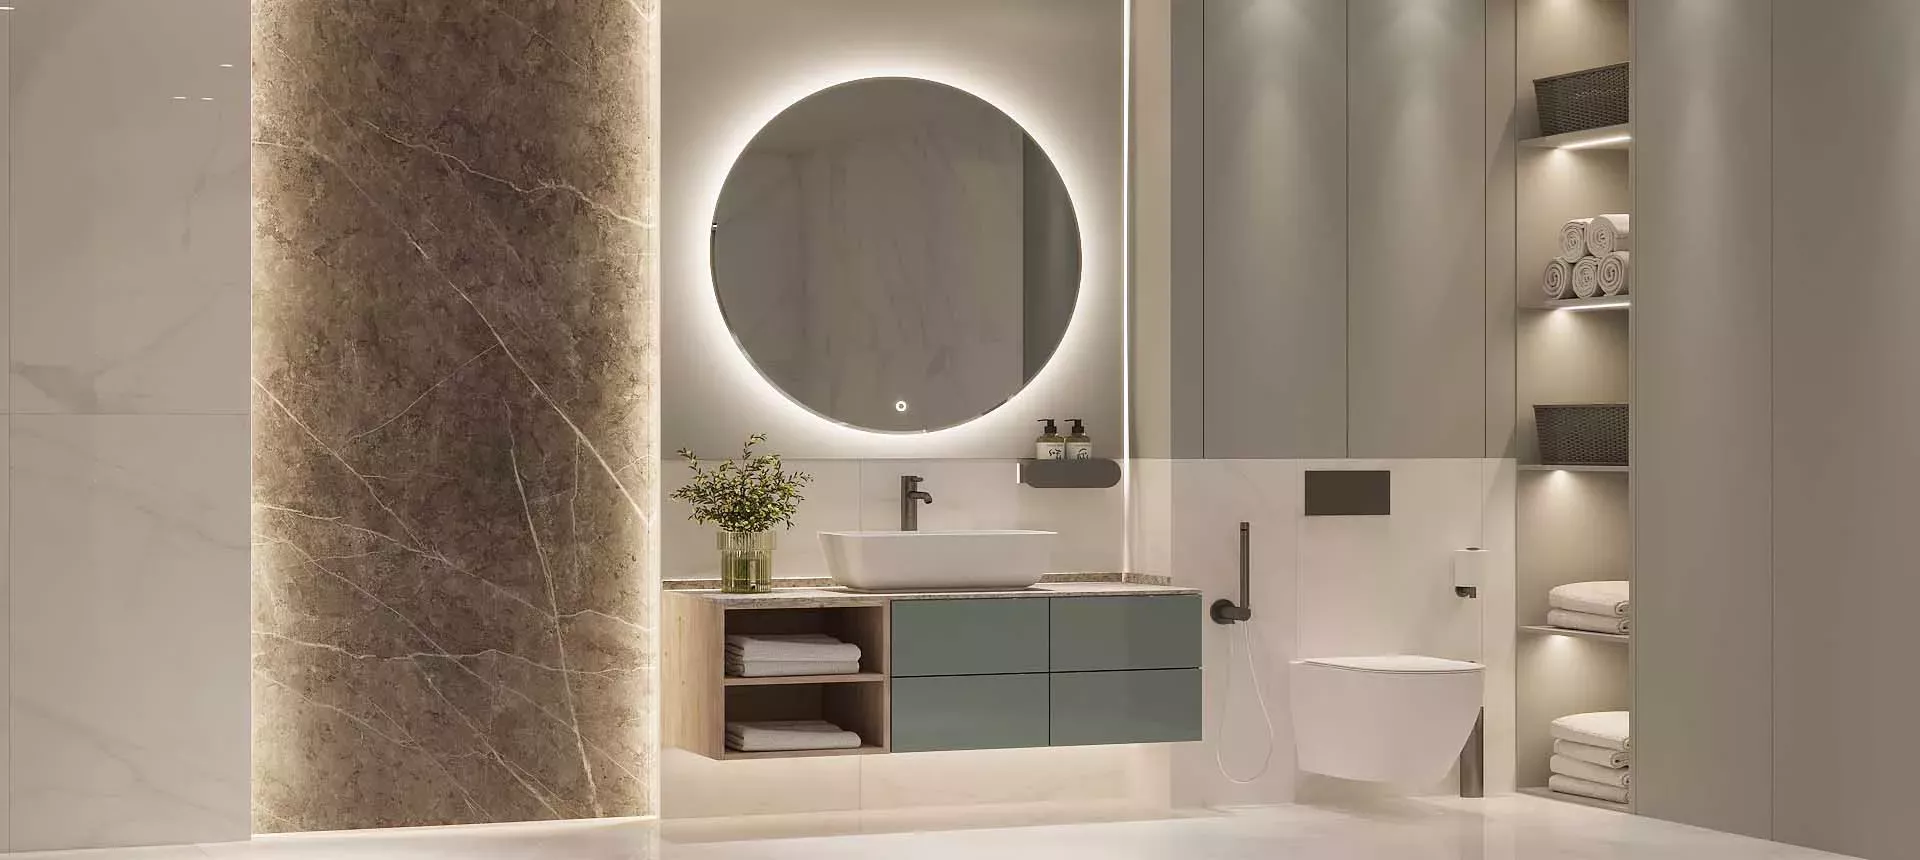 Мебель для ванной: выбор, который придаст стиль вашему интерьеру